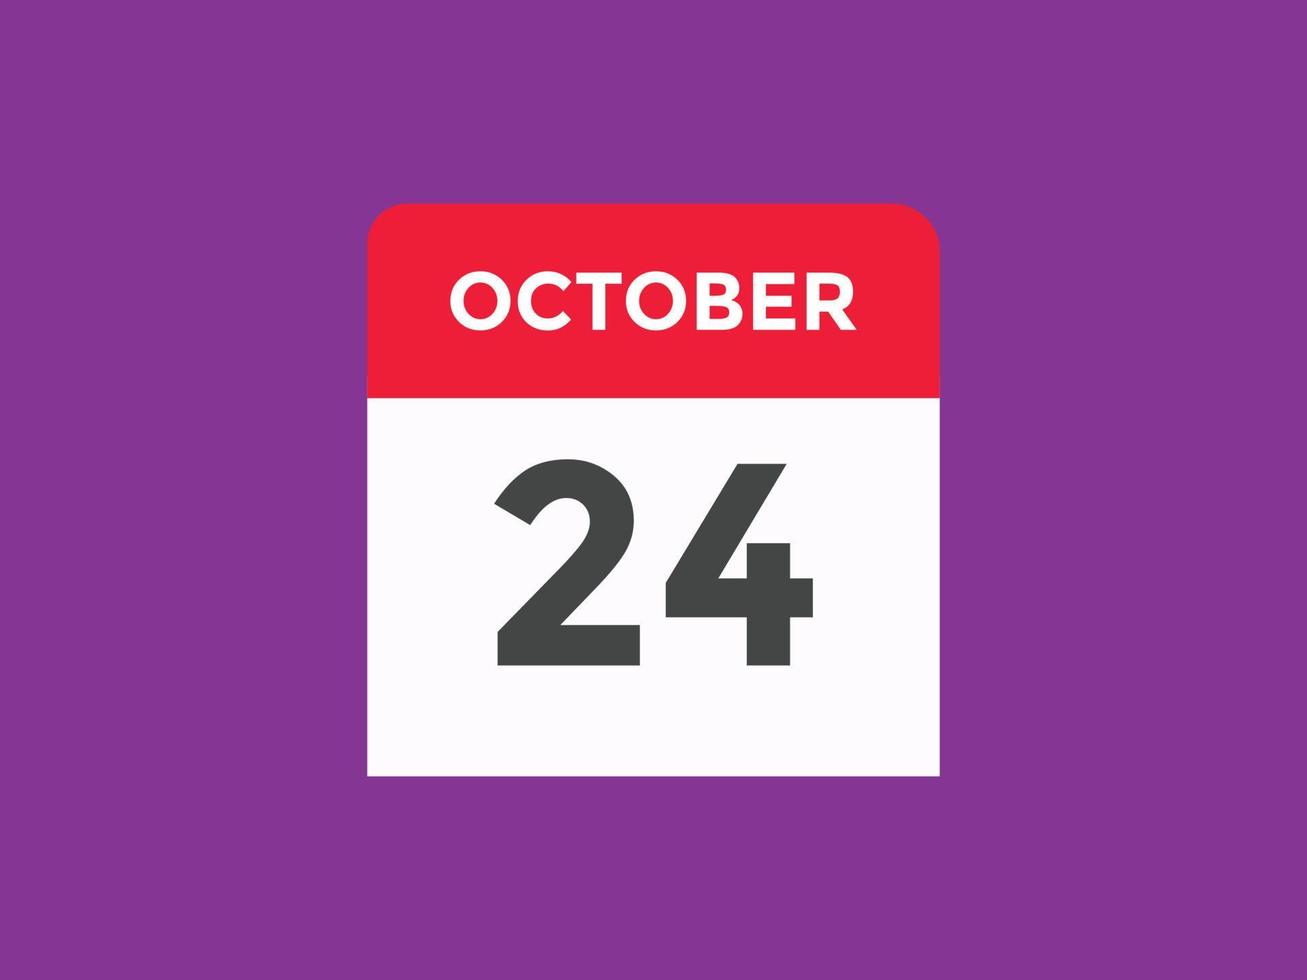 lembrete de calendário de 24 de outubro. 24 de outubro modelo de ícone de calendário diário. modelo de design de ícone de calendário 24 de outubro. ilustração vetorial vetor